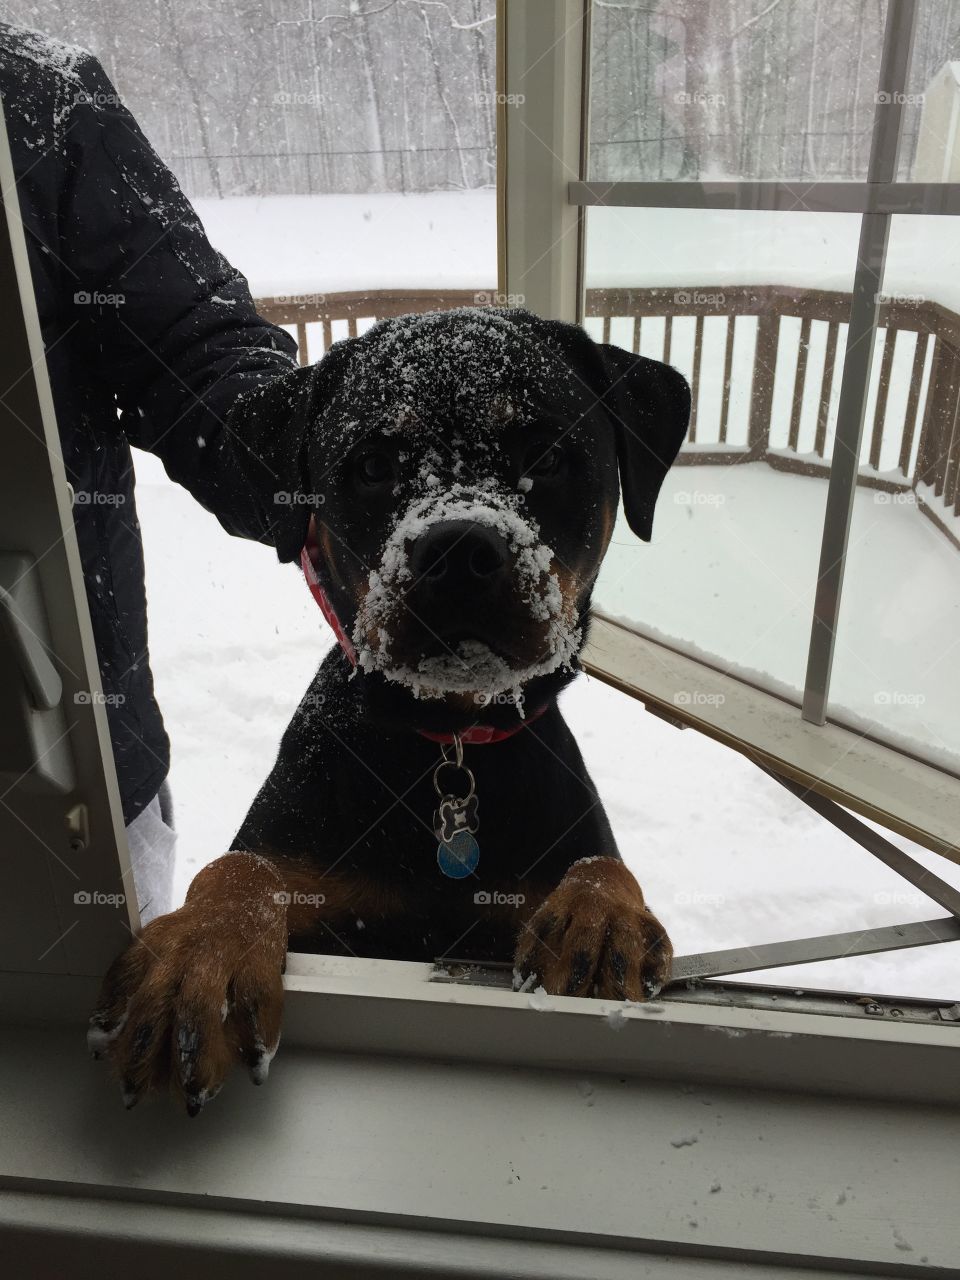 Sammi the rottweiler with a snowy face